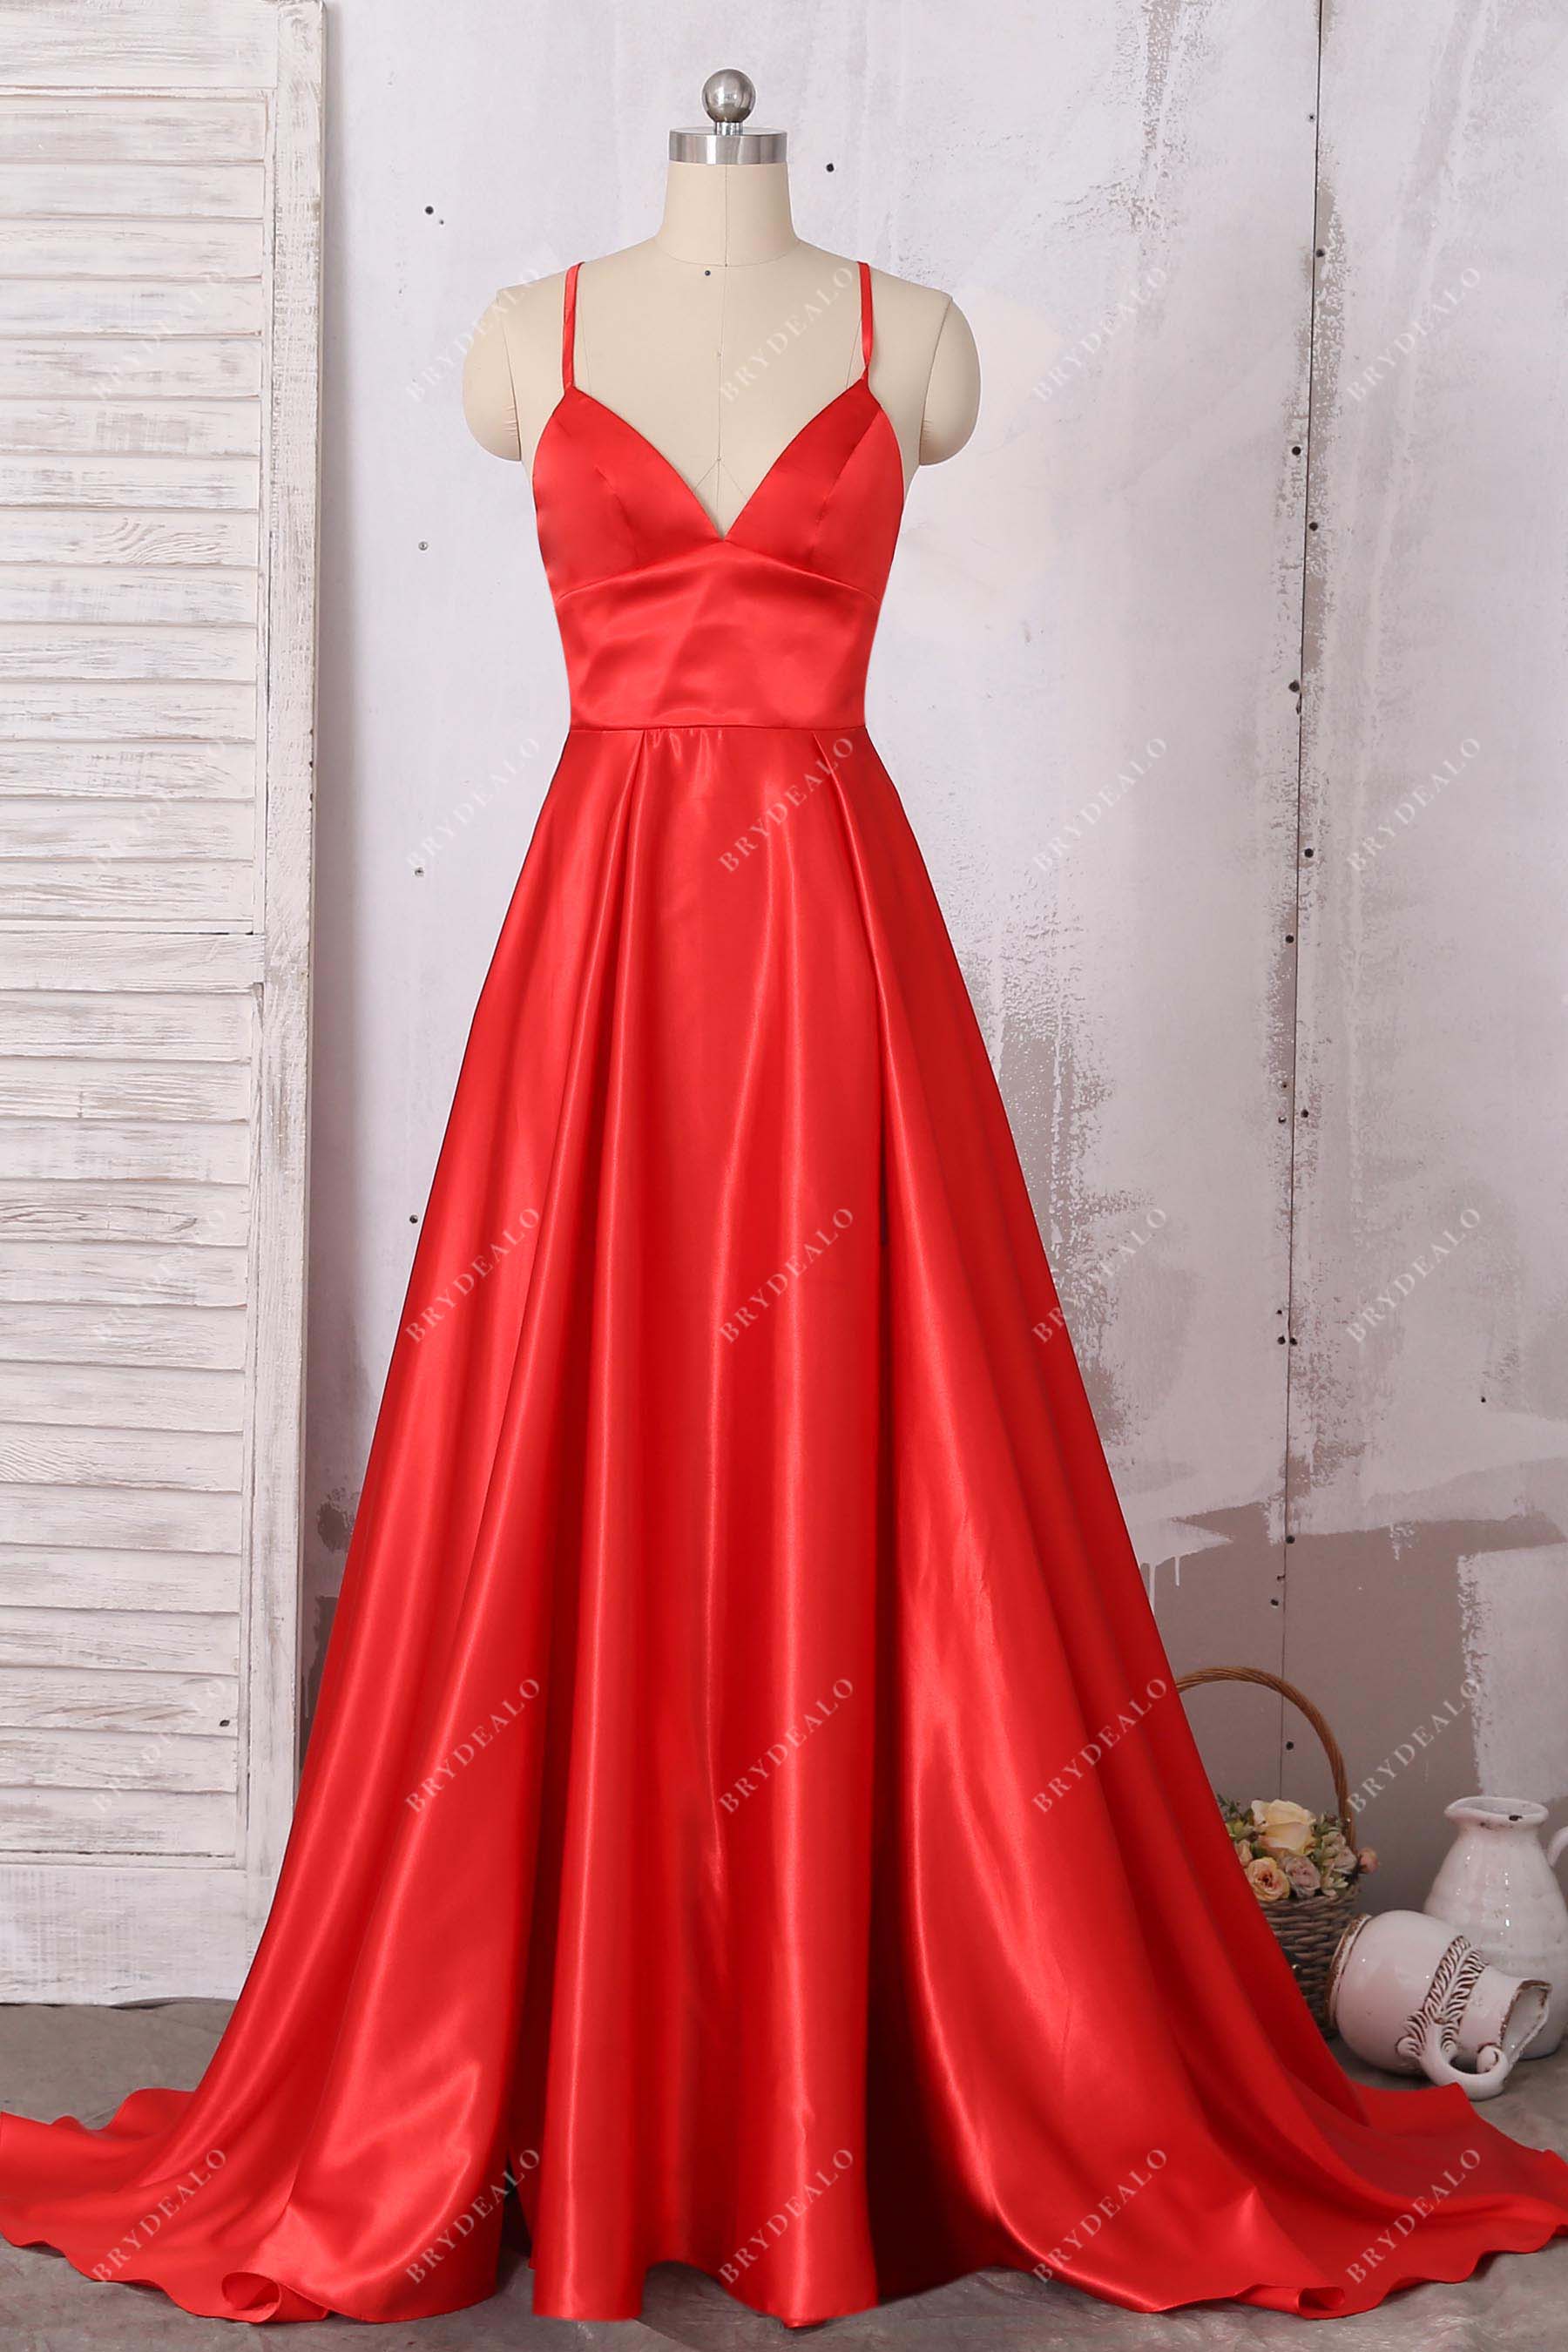 red empire waist dress